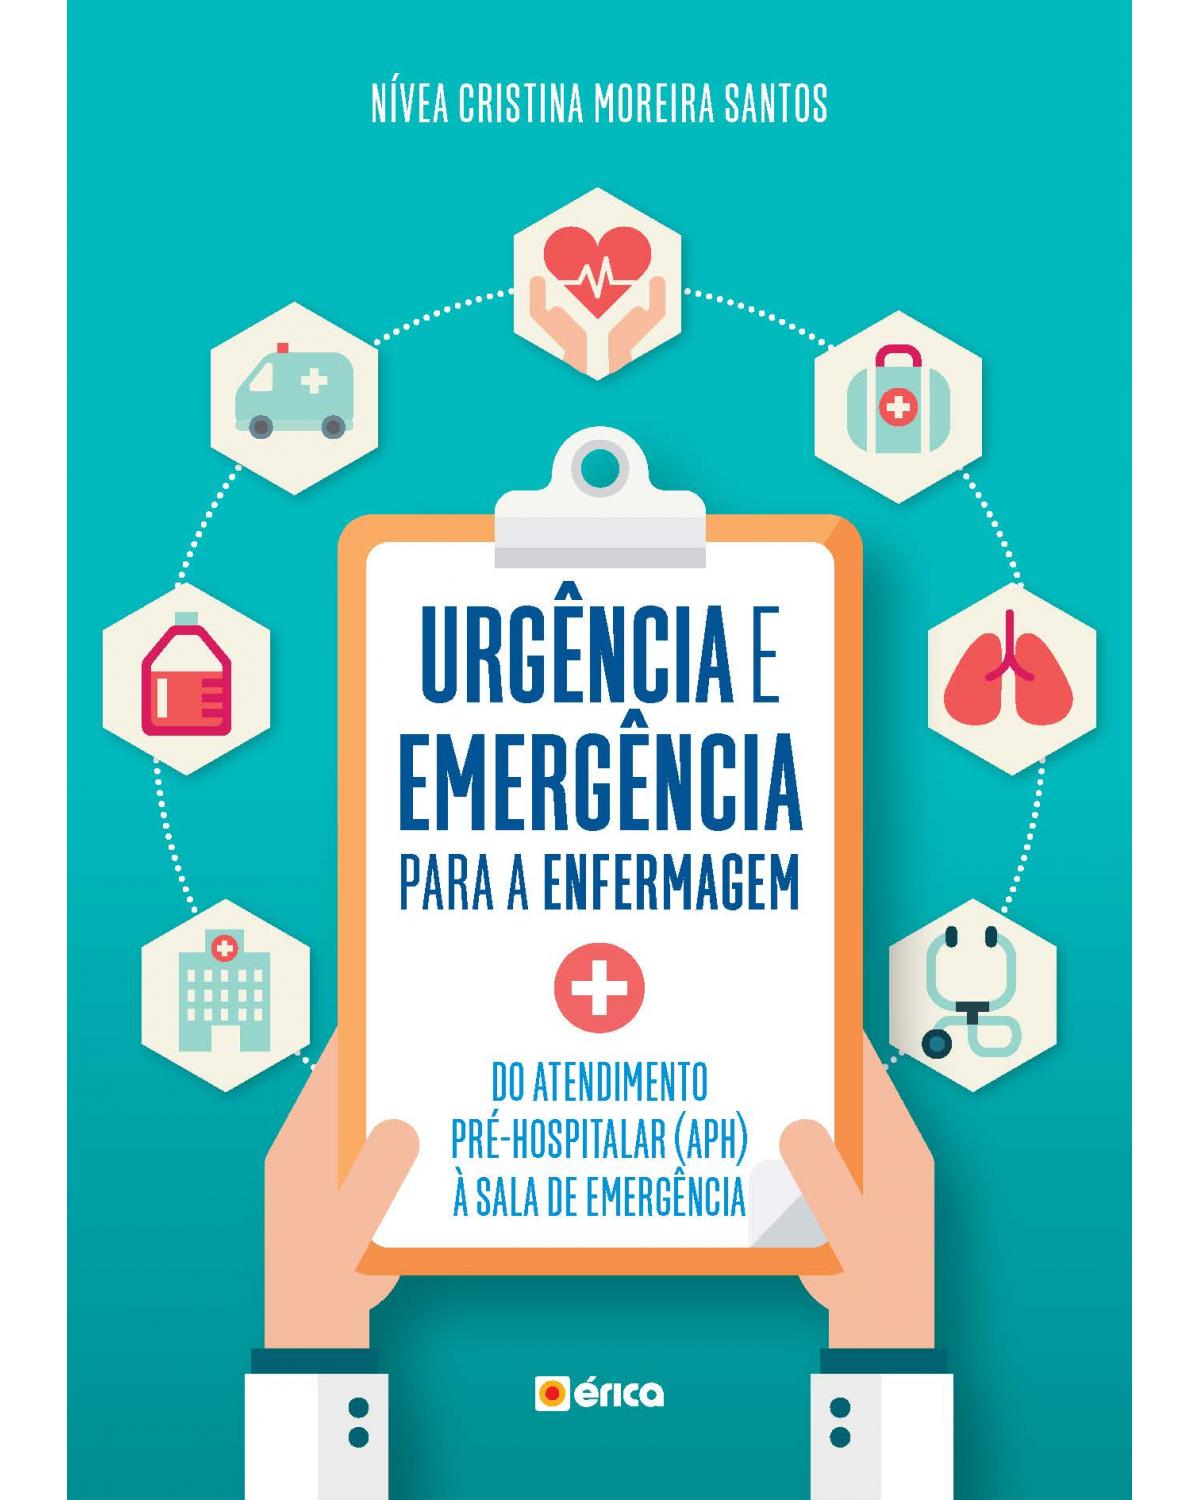 Urgência e emergência para enfermagem - do atendimento pré-hospitalar (APH) à sala de emergência - 7ª Edição | 2018